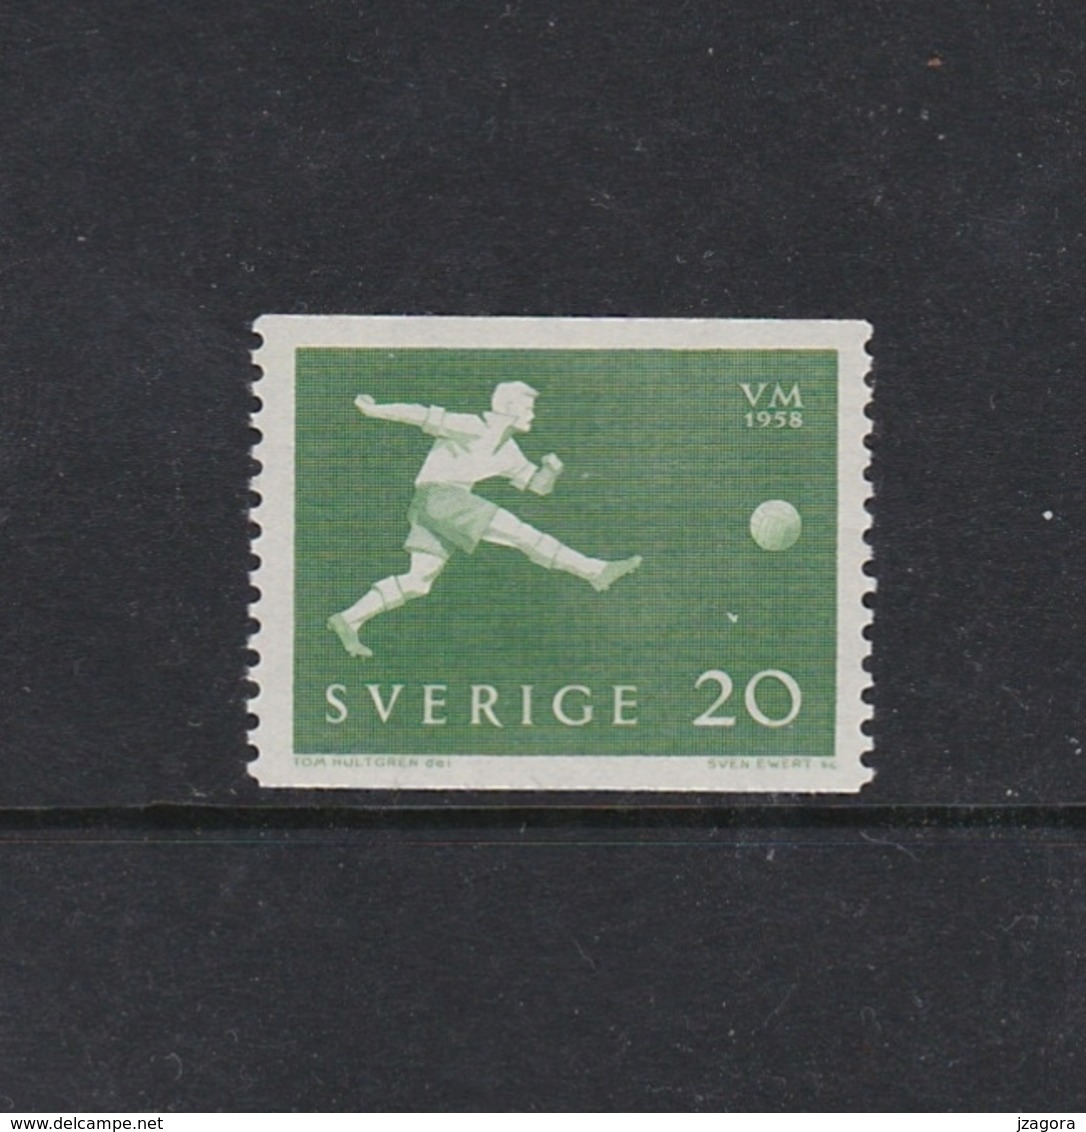 SOCCER FOOTBALL WORLD CHAMPIONSHIP - MUNDIAL 1958 - SWEDEN SCHWEDEN SUEDE MI 439 A MNH - 1958 – Schweden